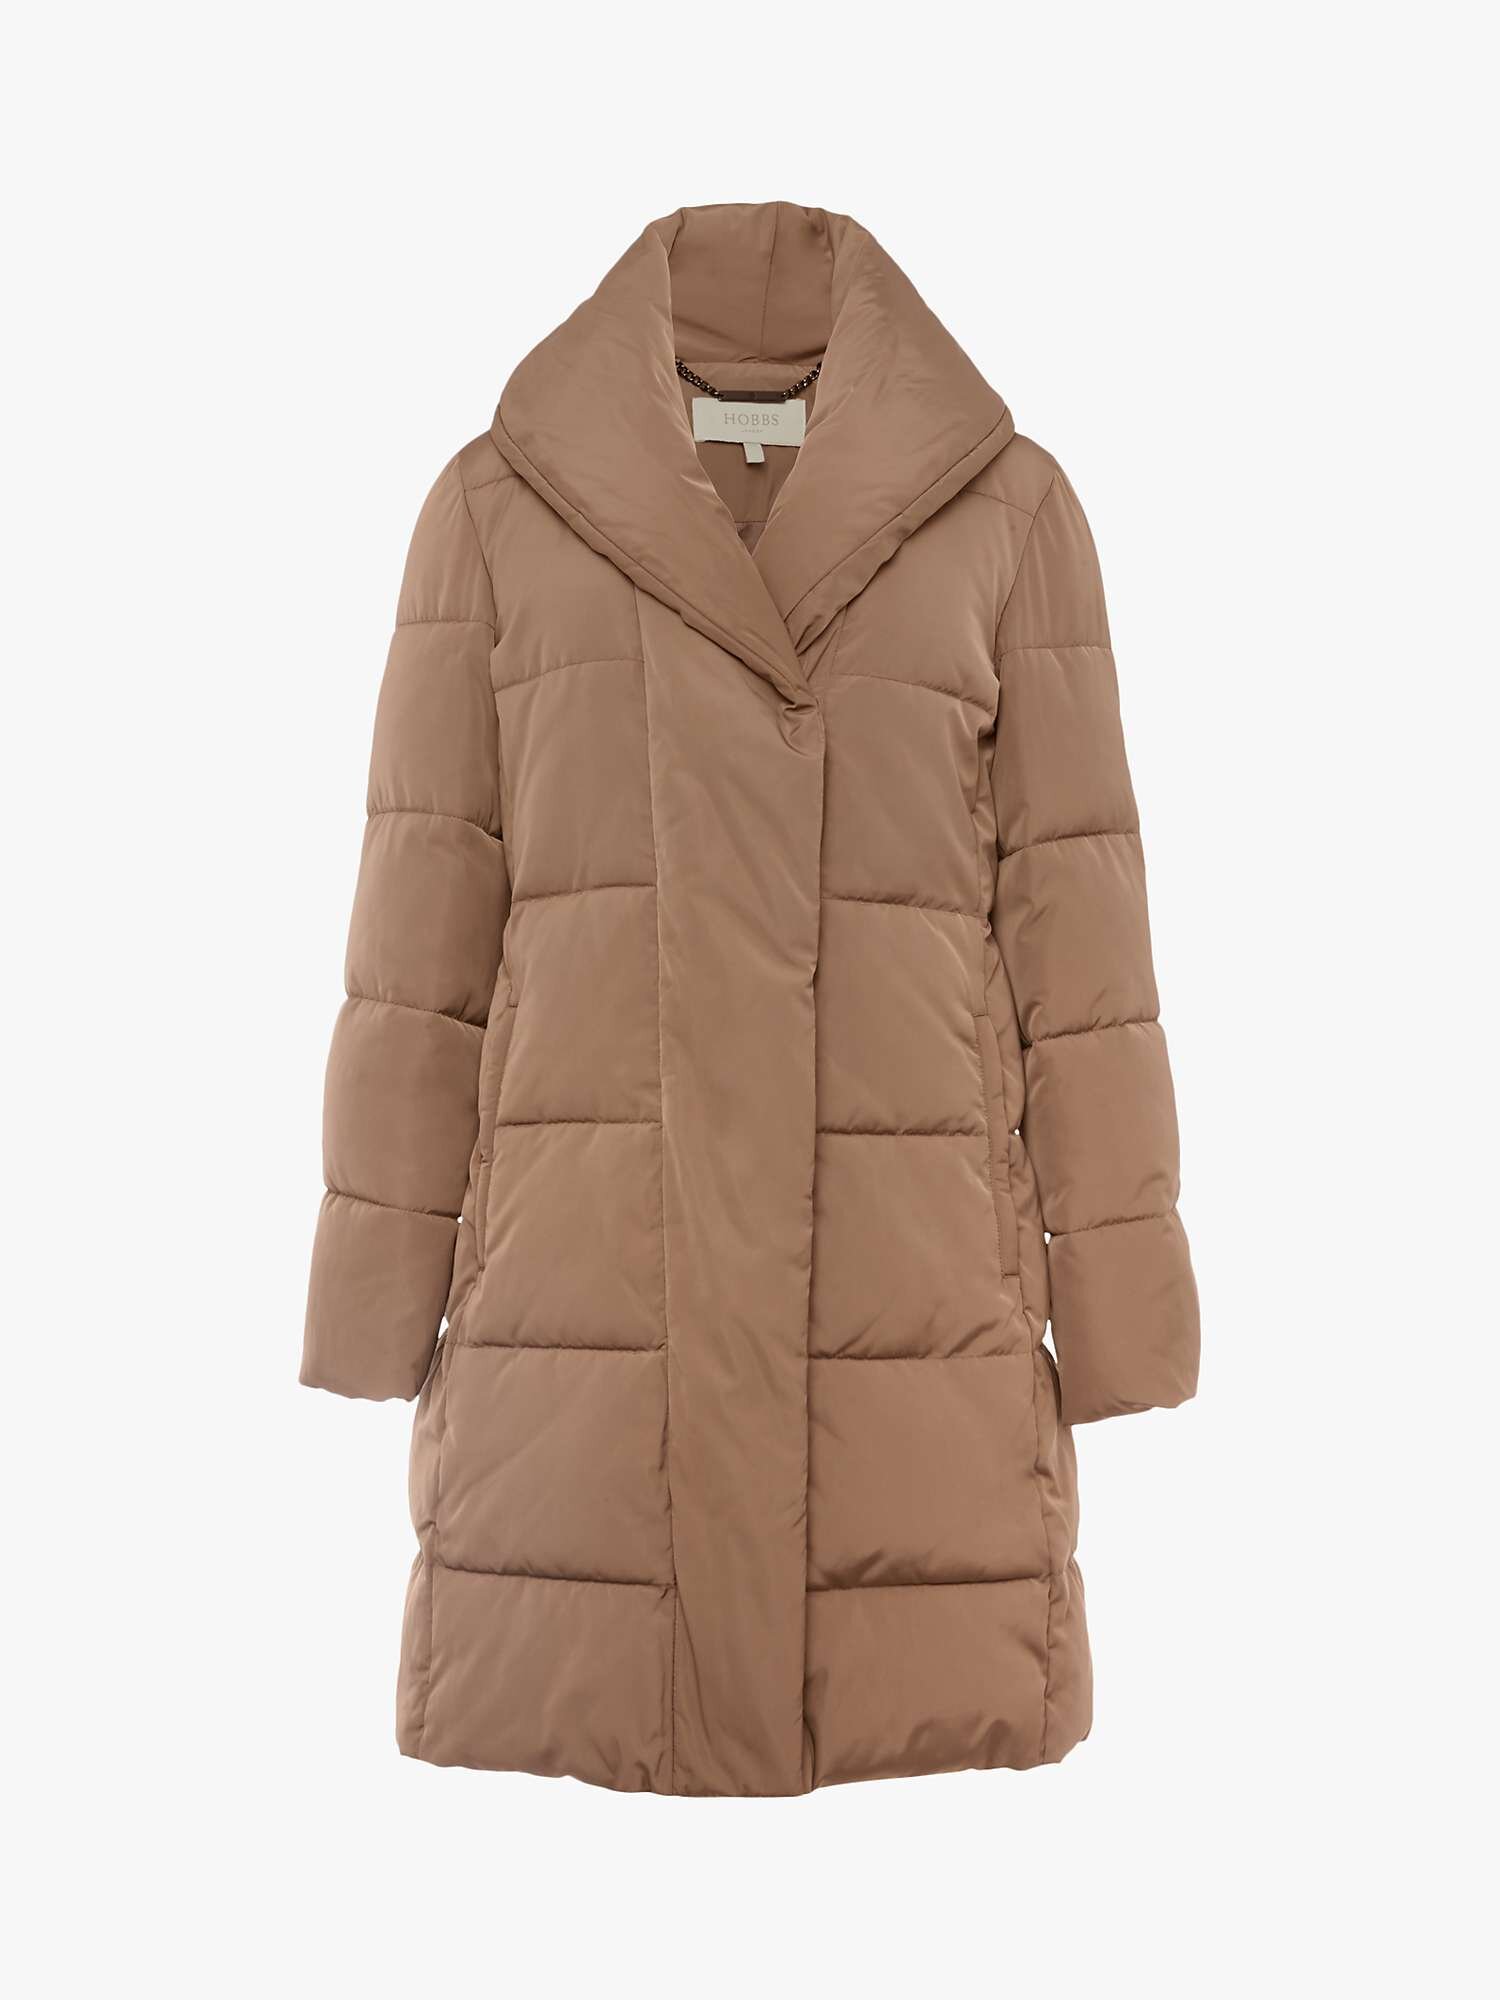 Coat, £179, Hobbs